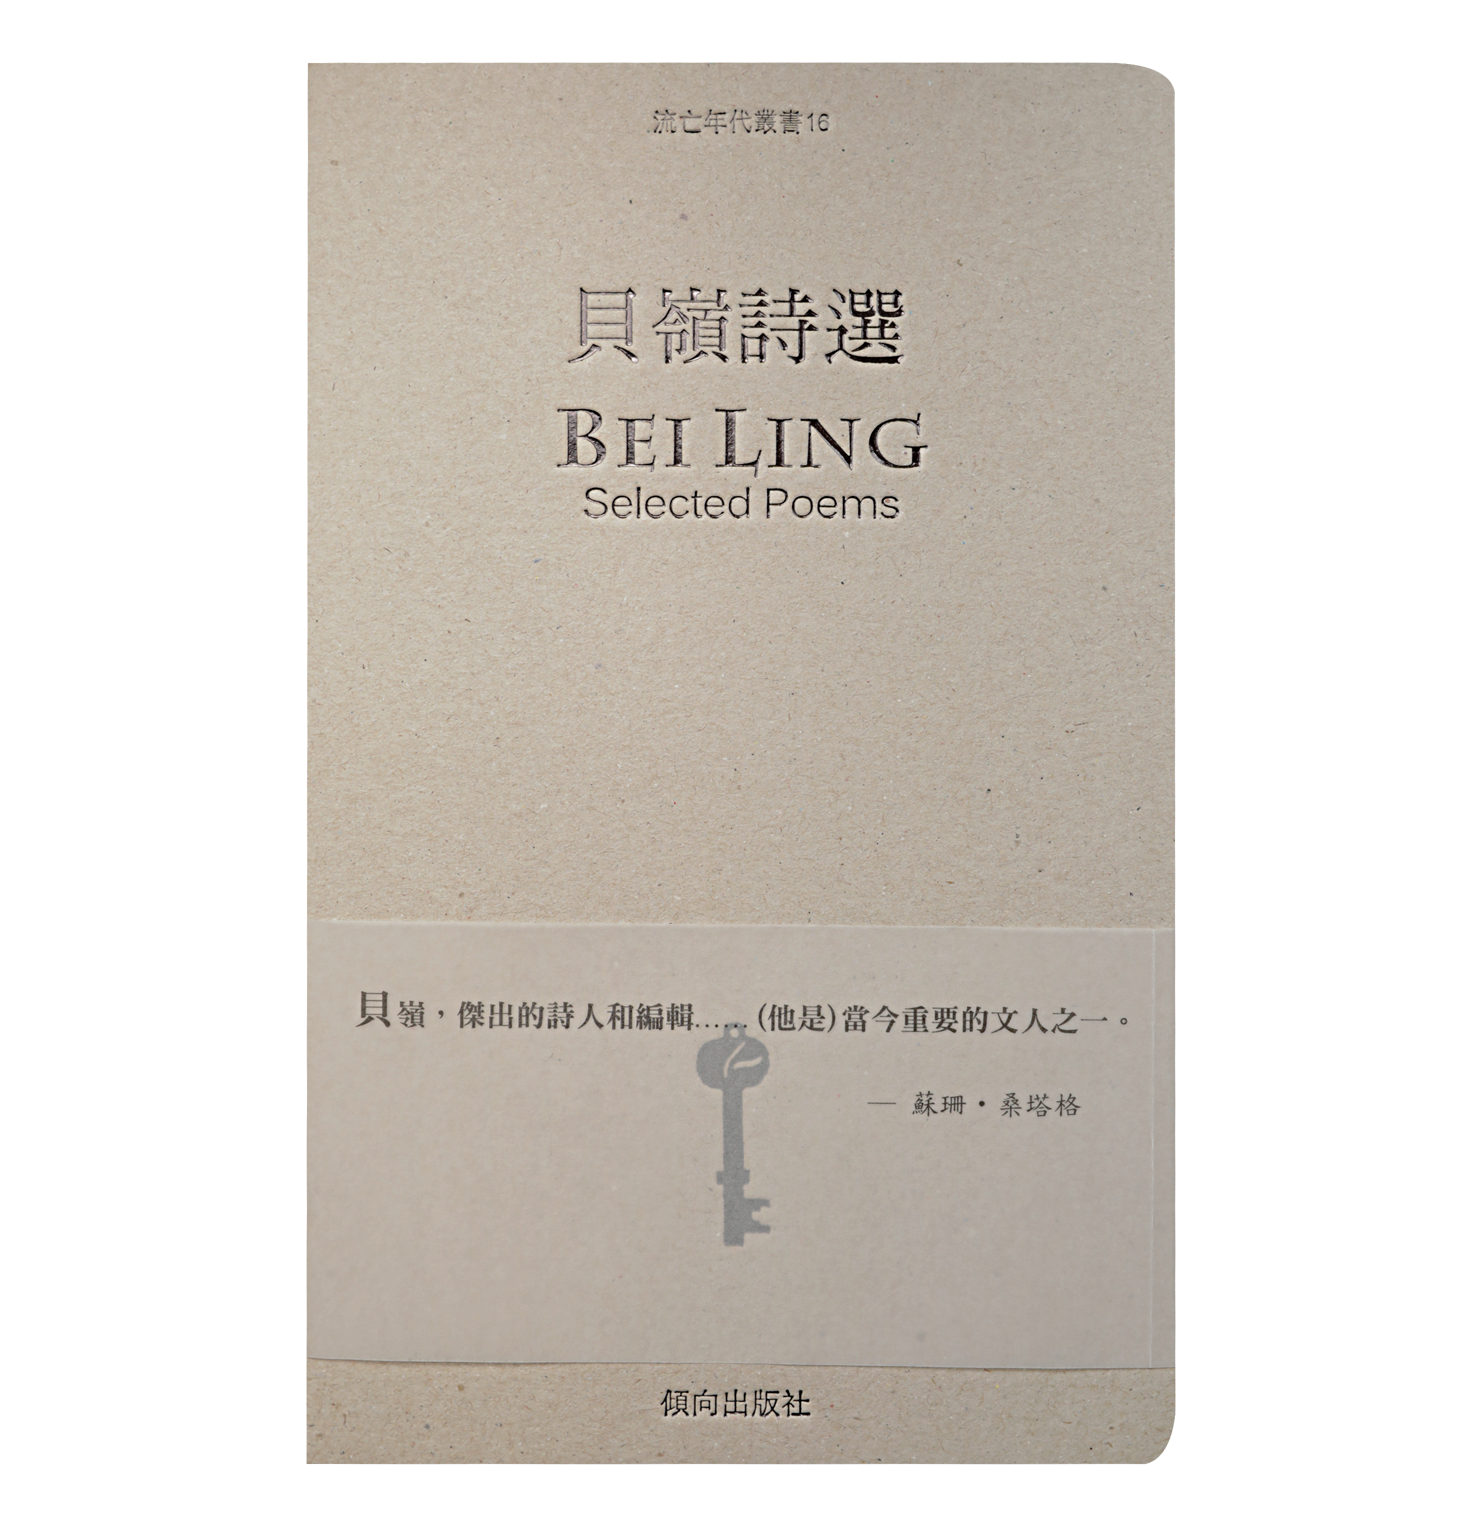 貝嶺詩選 - Bei Ling Selected Poems